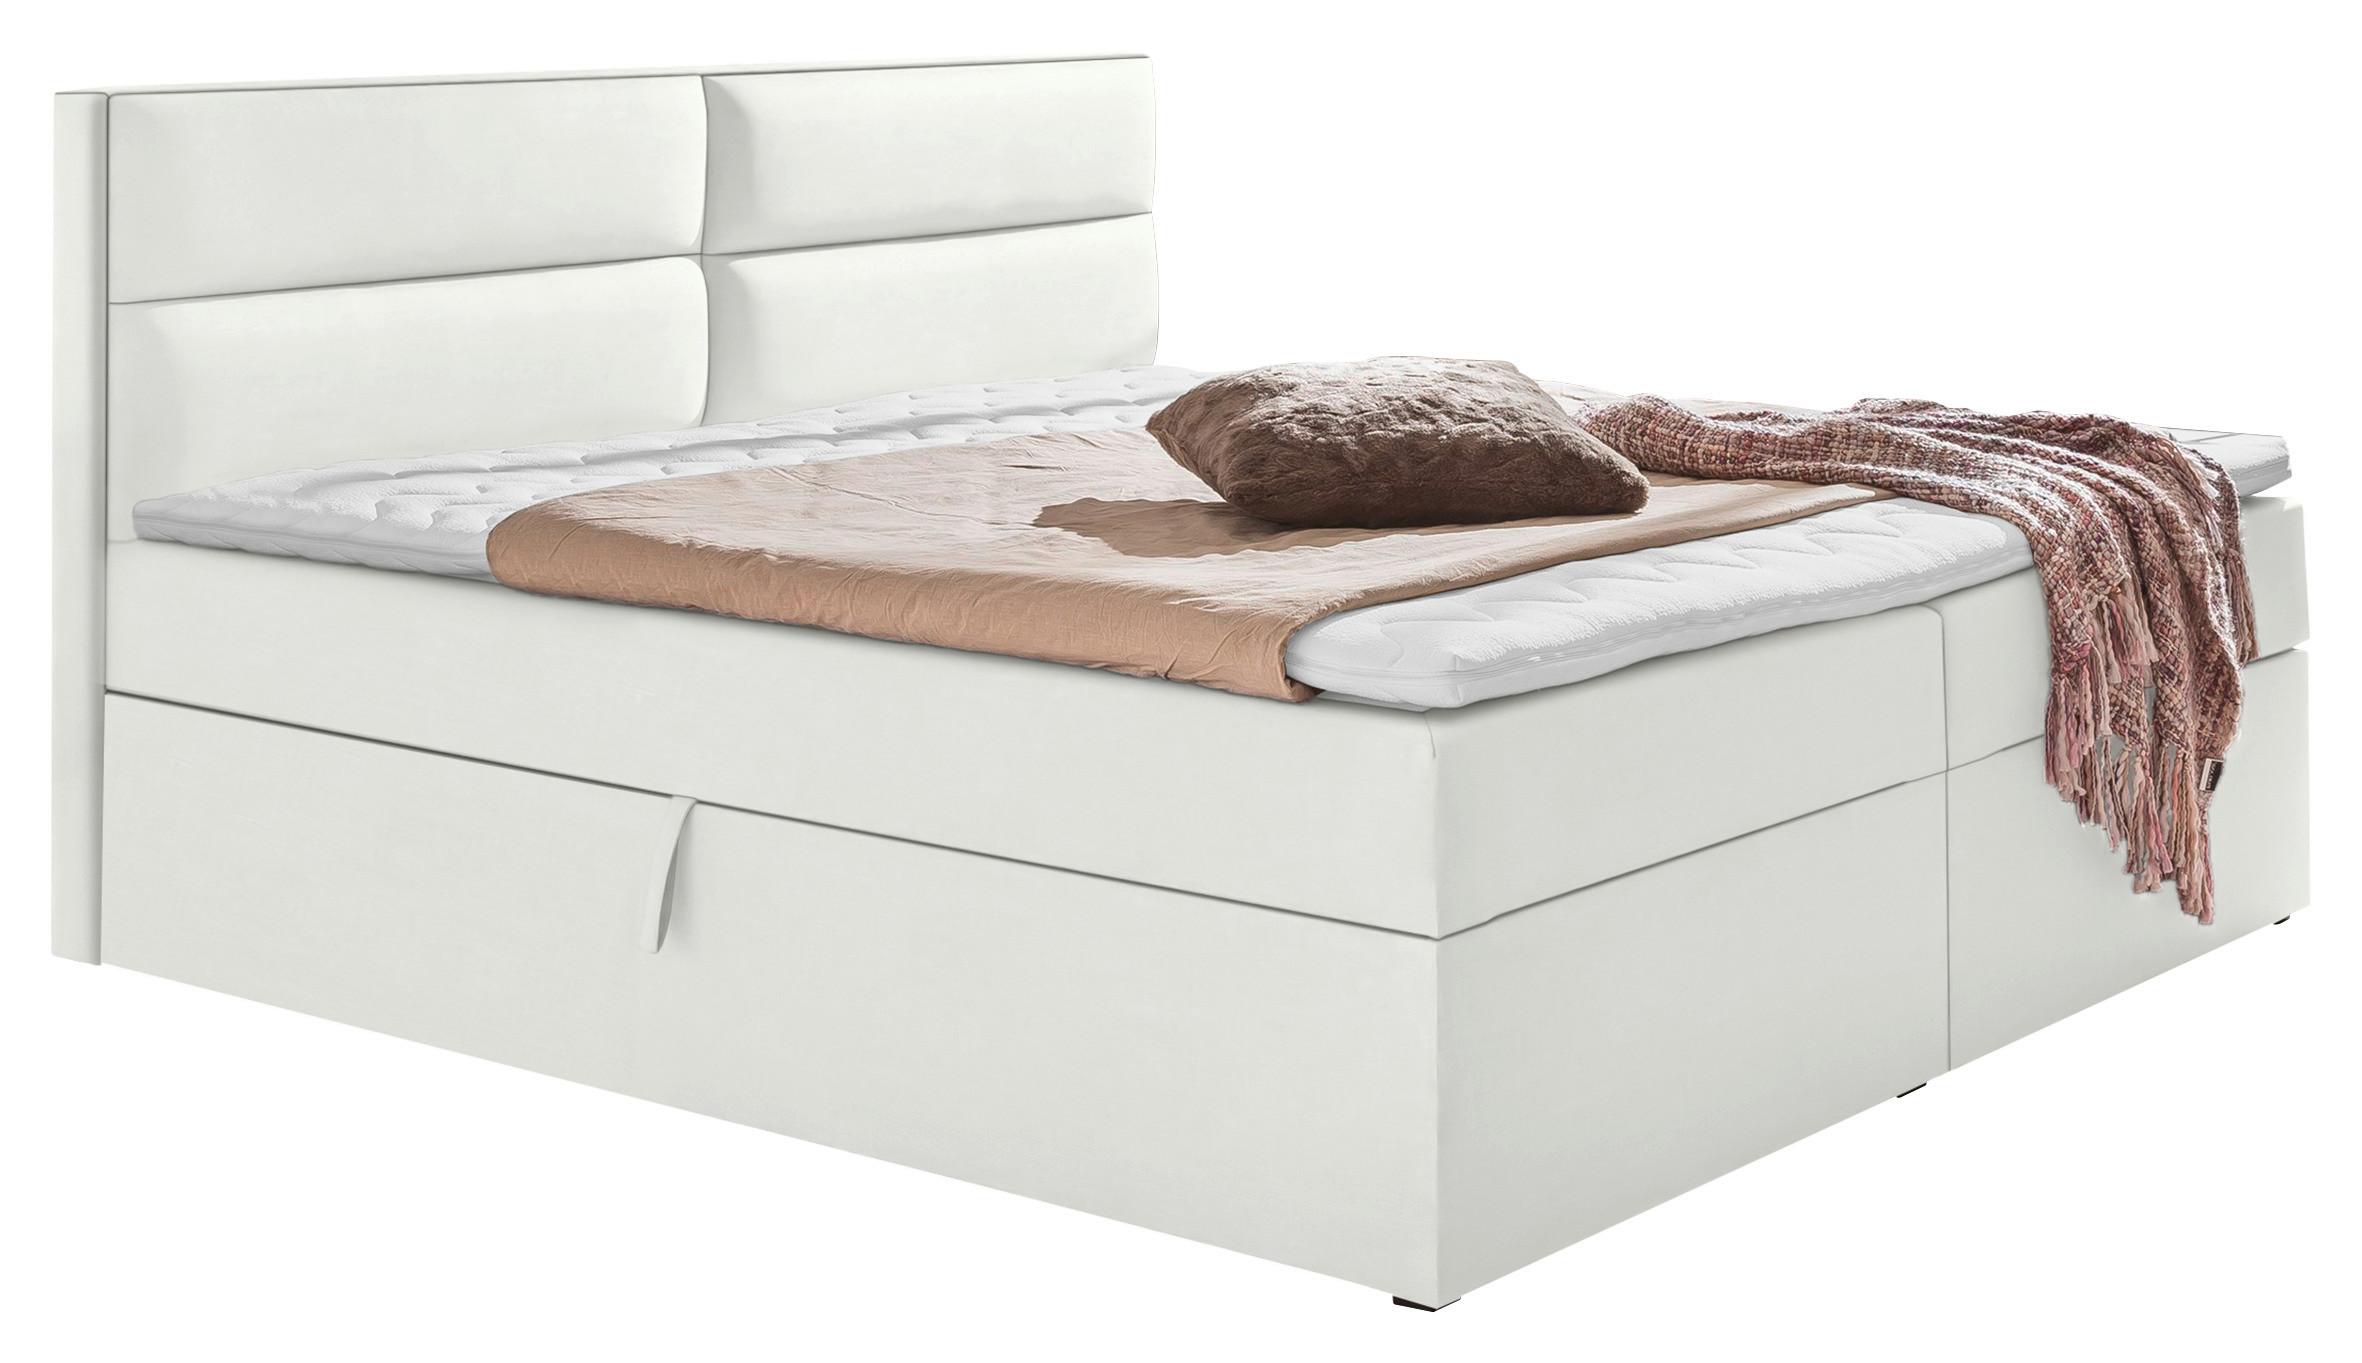 Boxspringbett mit Topper + Bettkasten 180x200cm Mercura - Weiß, MODERN, Holzwerkstoff/Textil (180/200cm) - MID.YOU